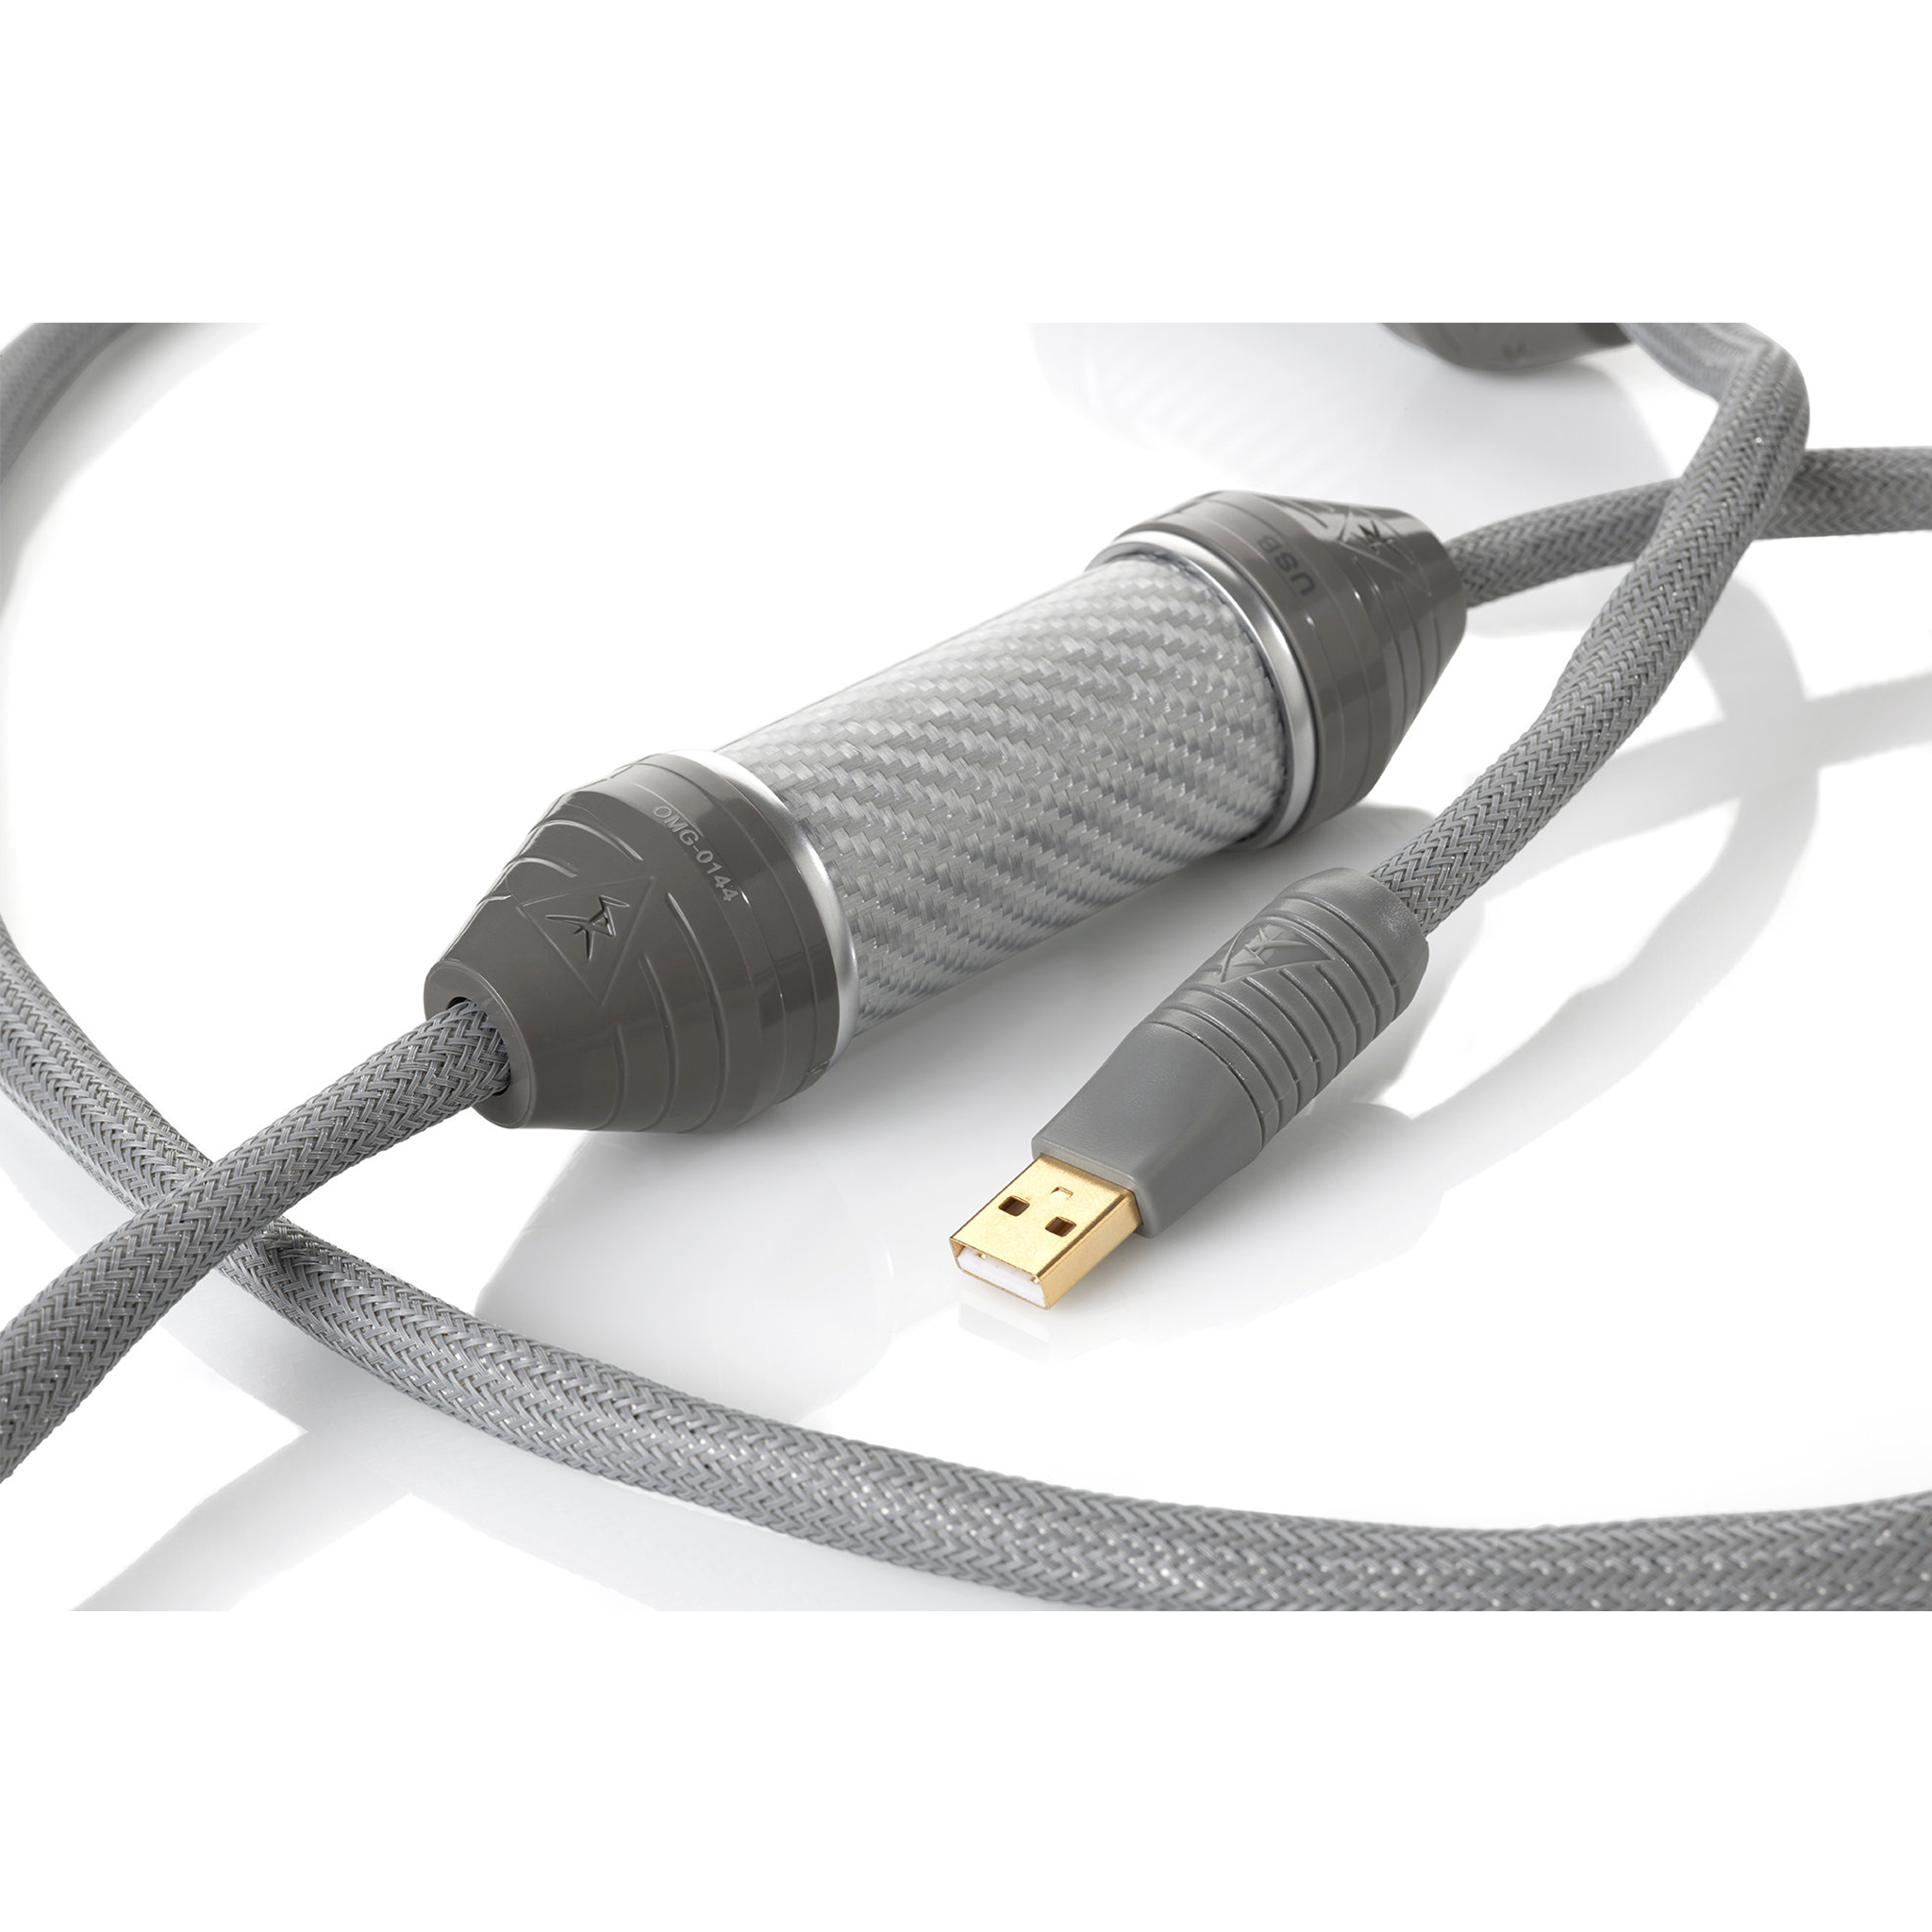 Omega USB Cable